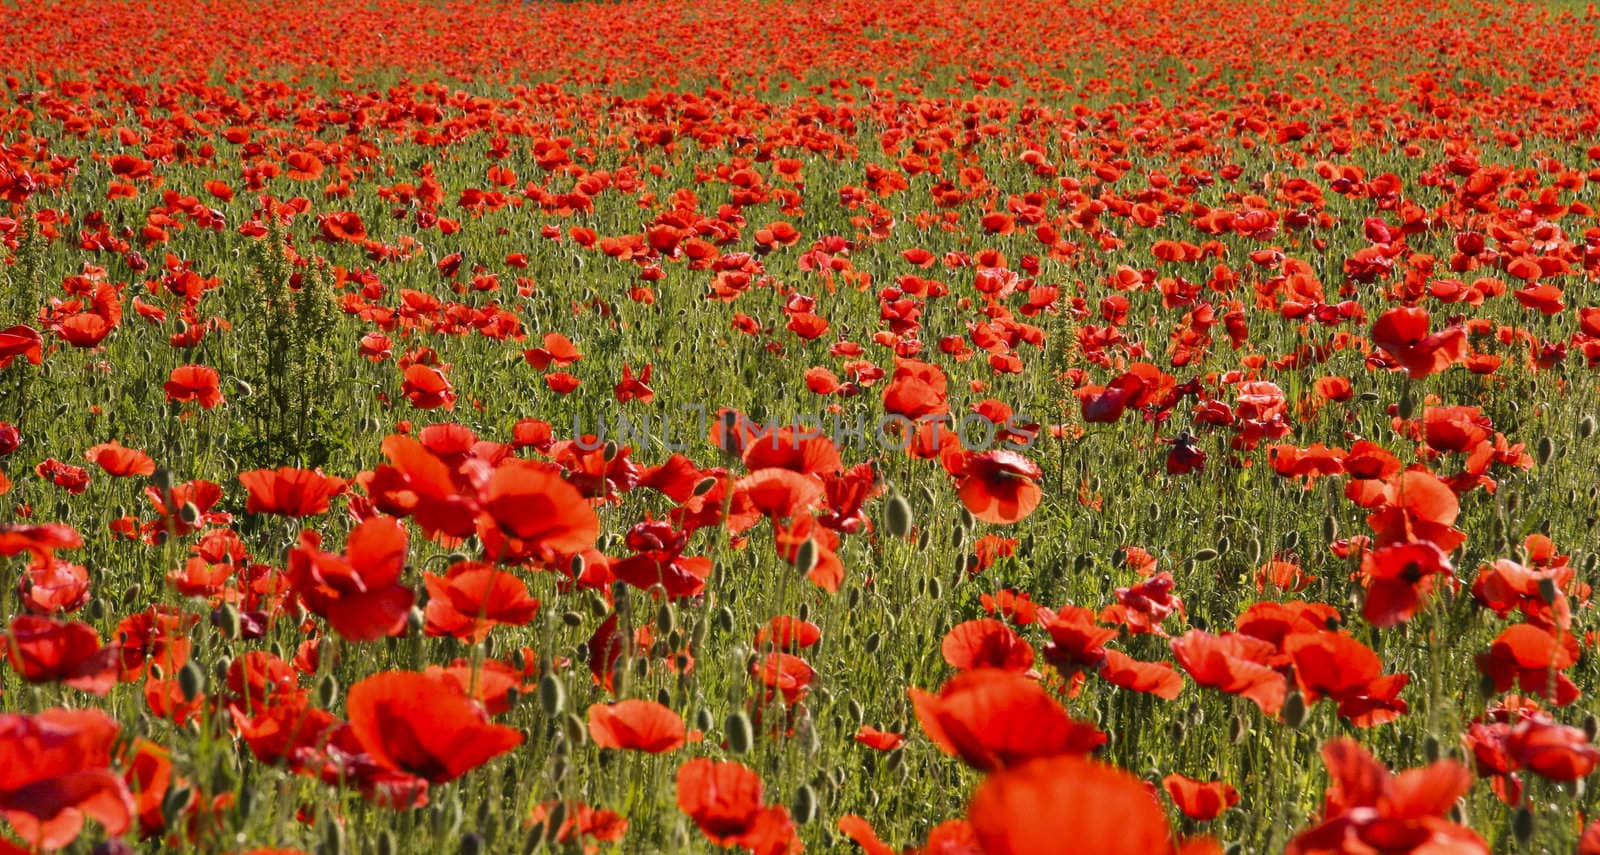 Red poppy field by ursolv